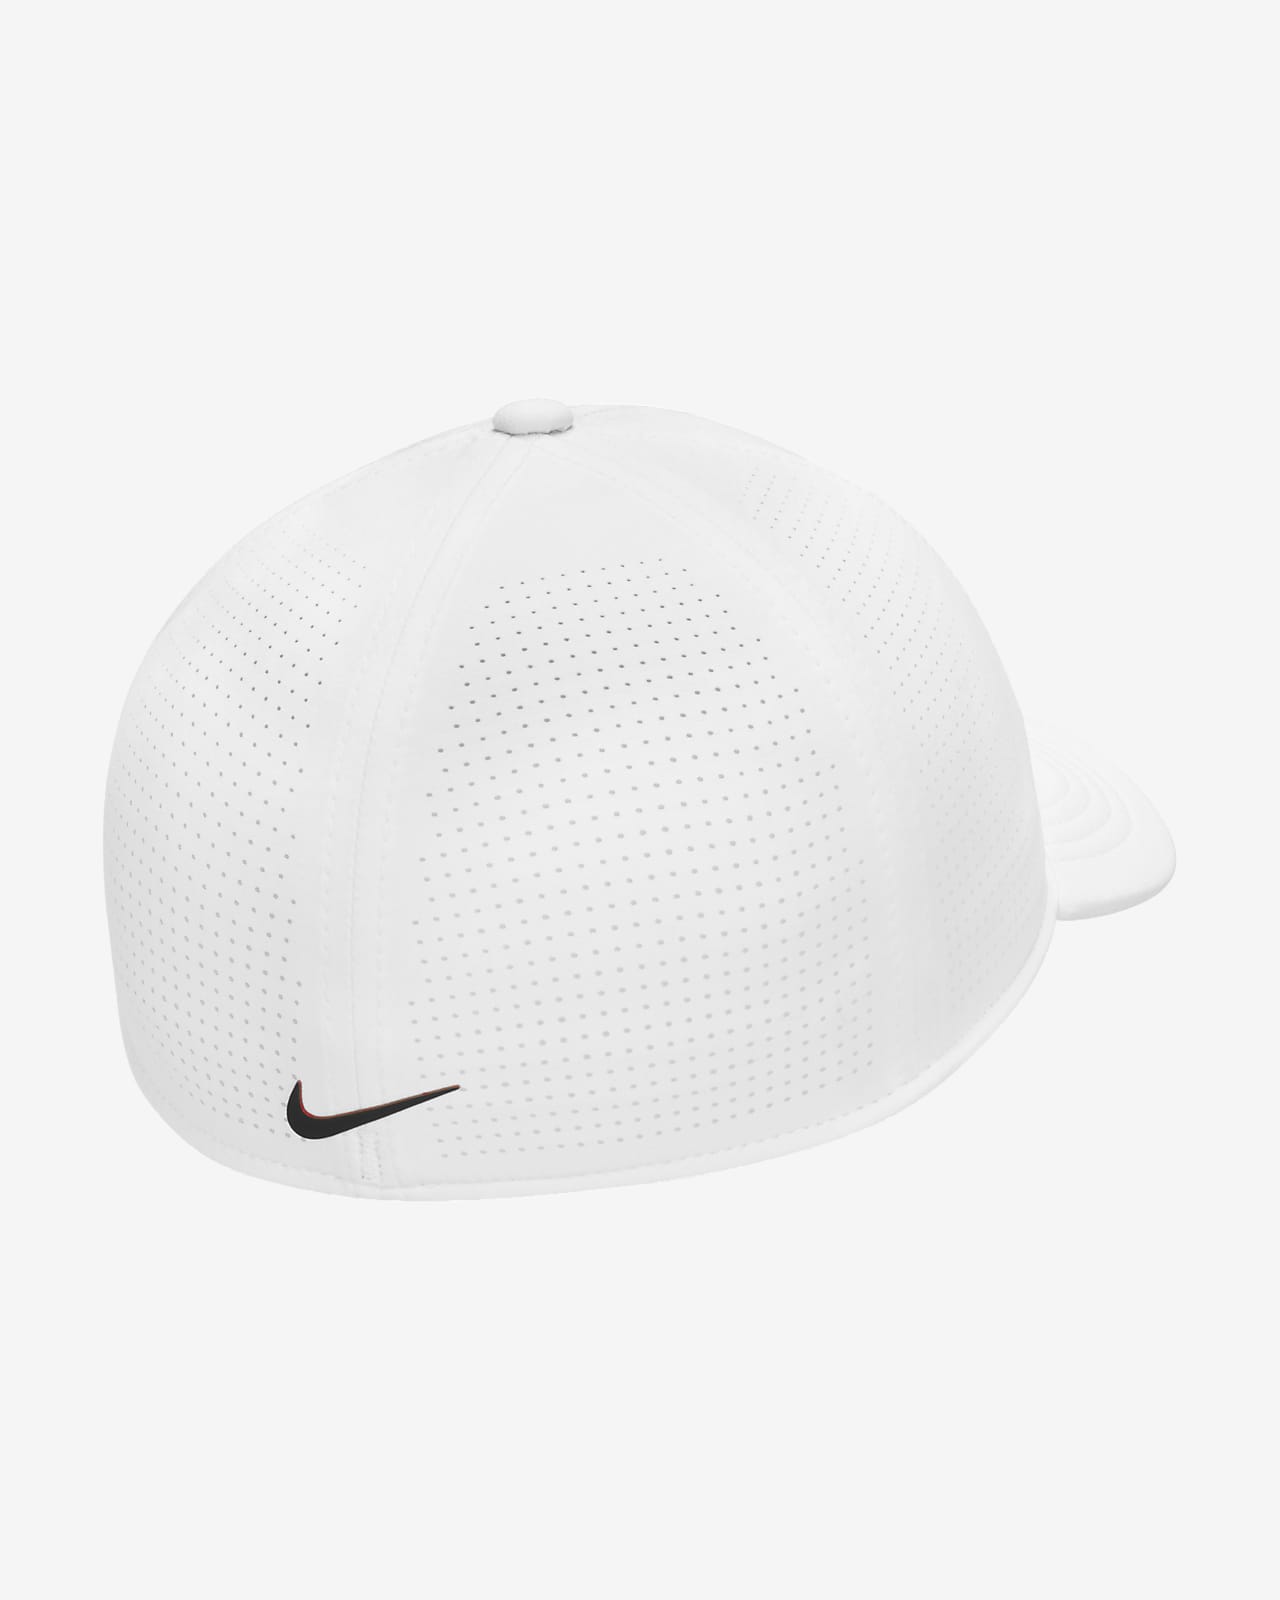 Nike Dri-FIT Tiger Woods Legacy91 Golf Hat.